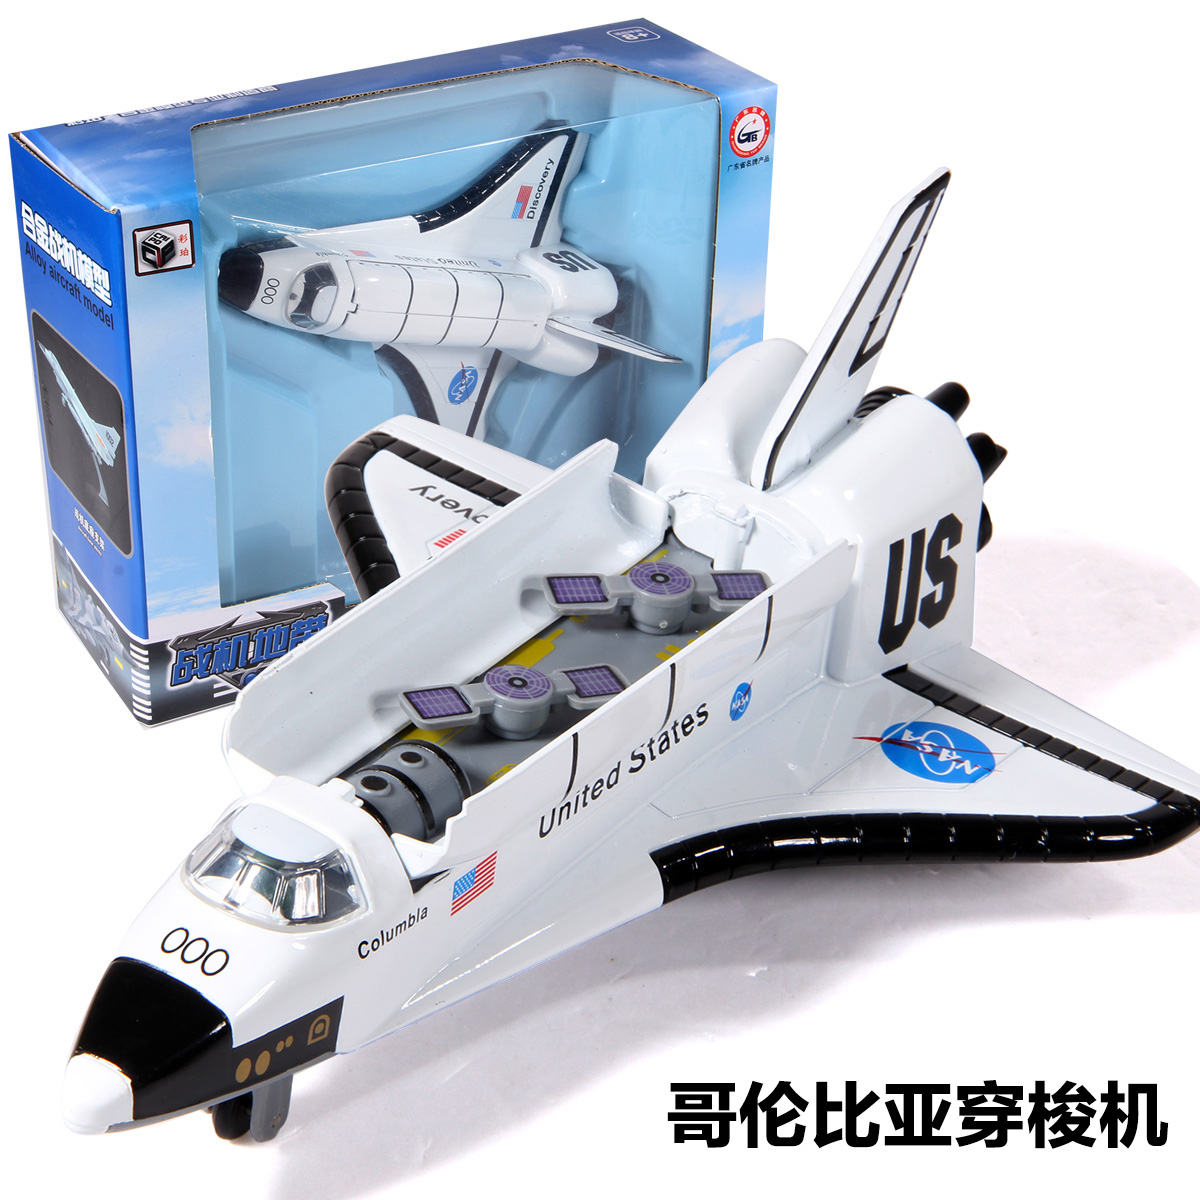 彩珀合金哥伦比亚穿梭机 宇宙飞船飞机模型 回力声光玩具 太空船 玩具/童车/益智/积木/模型 飞机模型 原图主图